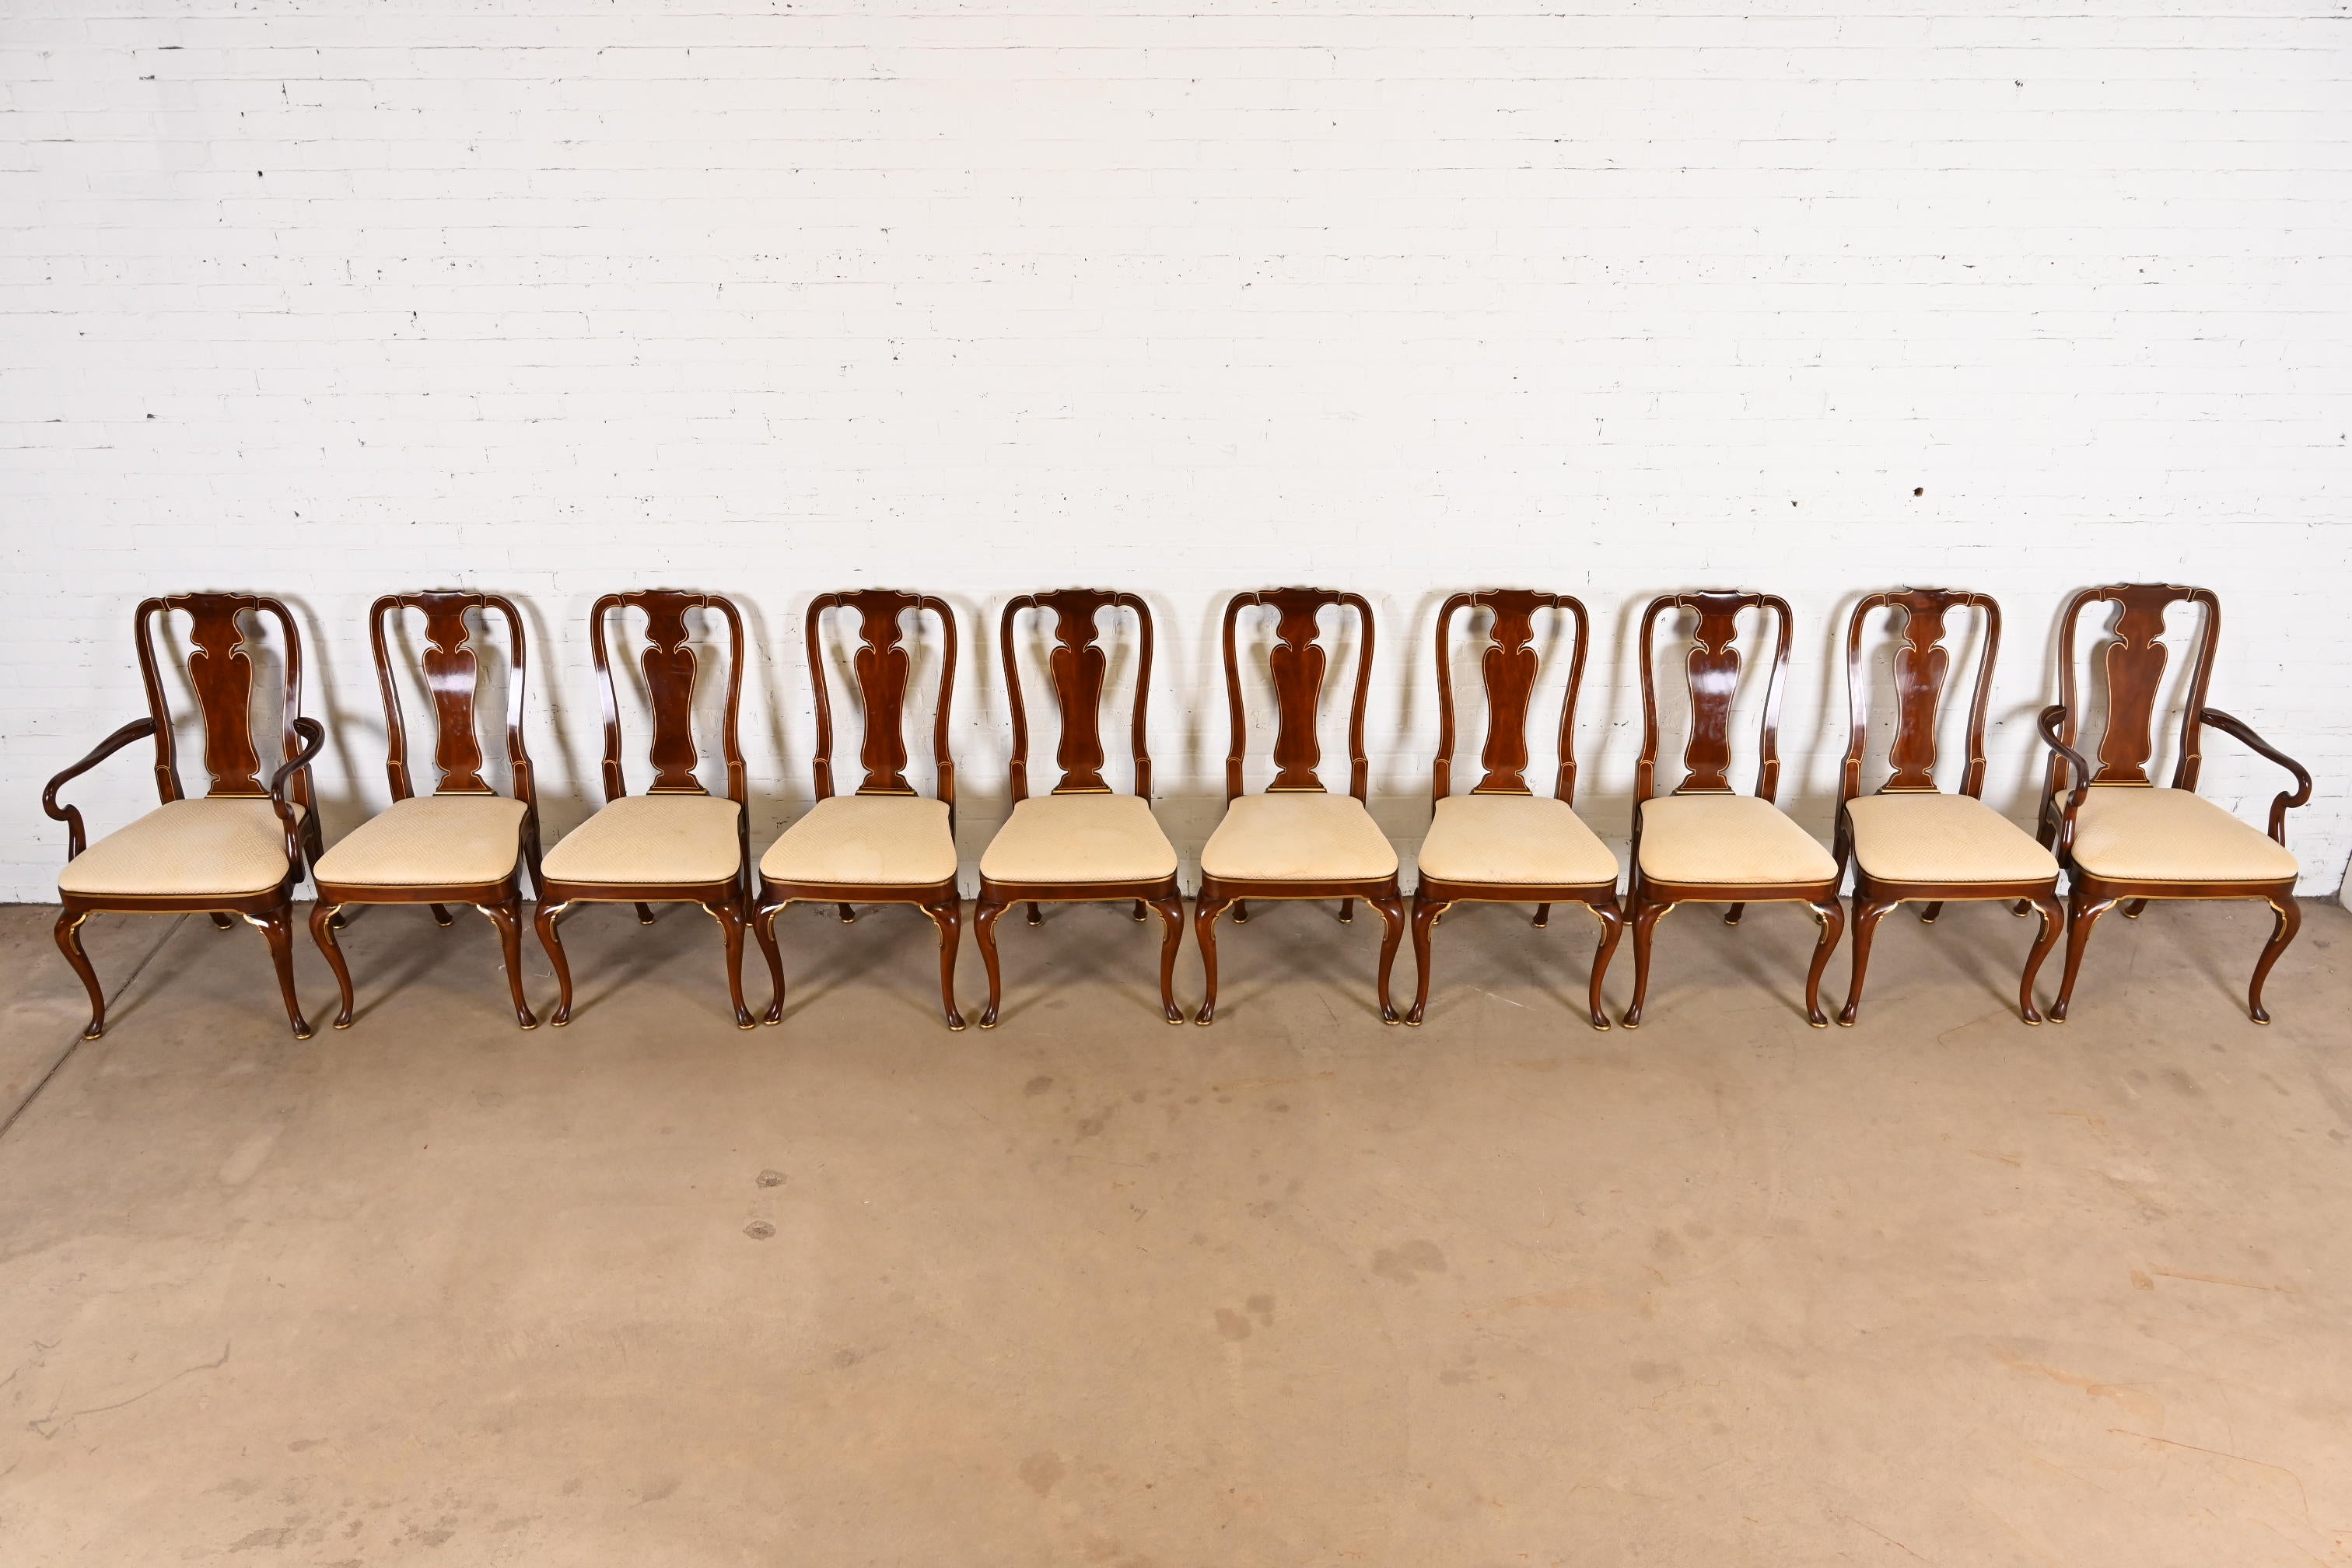 Fermer
Description
Un magnifique ensemble de dix chaises de salle à manger de style Queen Anne

Par Kindel Furniture

États-Unis, années 1980

Acajou sculpté, avec détails dorés, et sièges rembourrés.

Mesures :
Chaises d'appoint - 21 